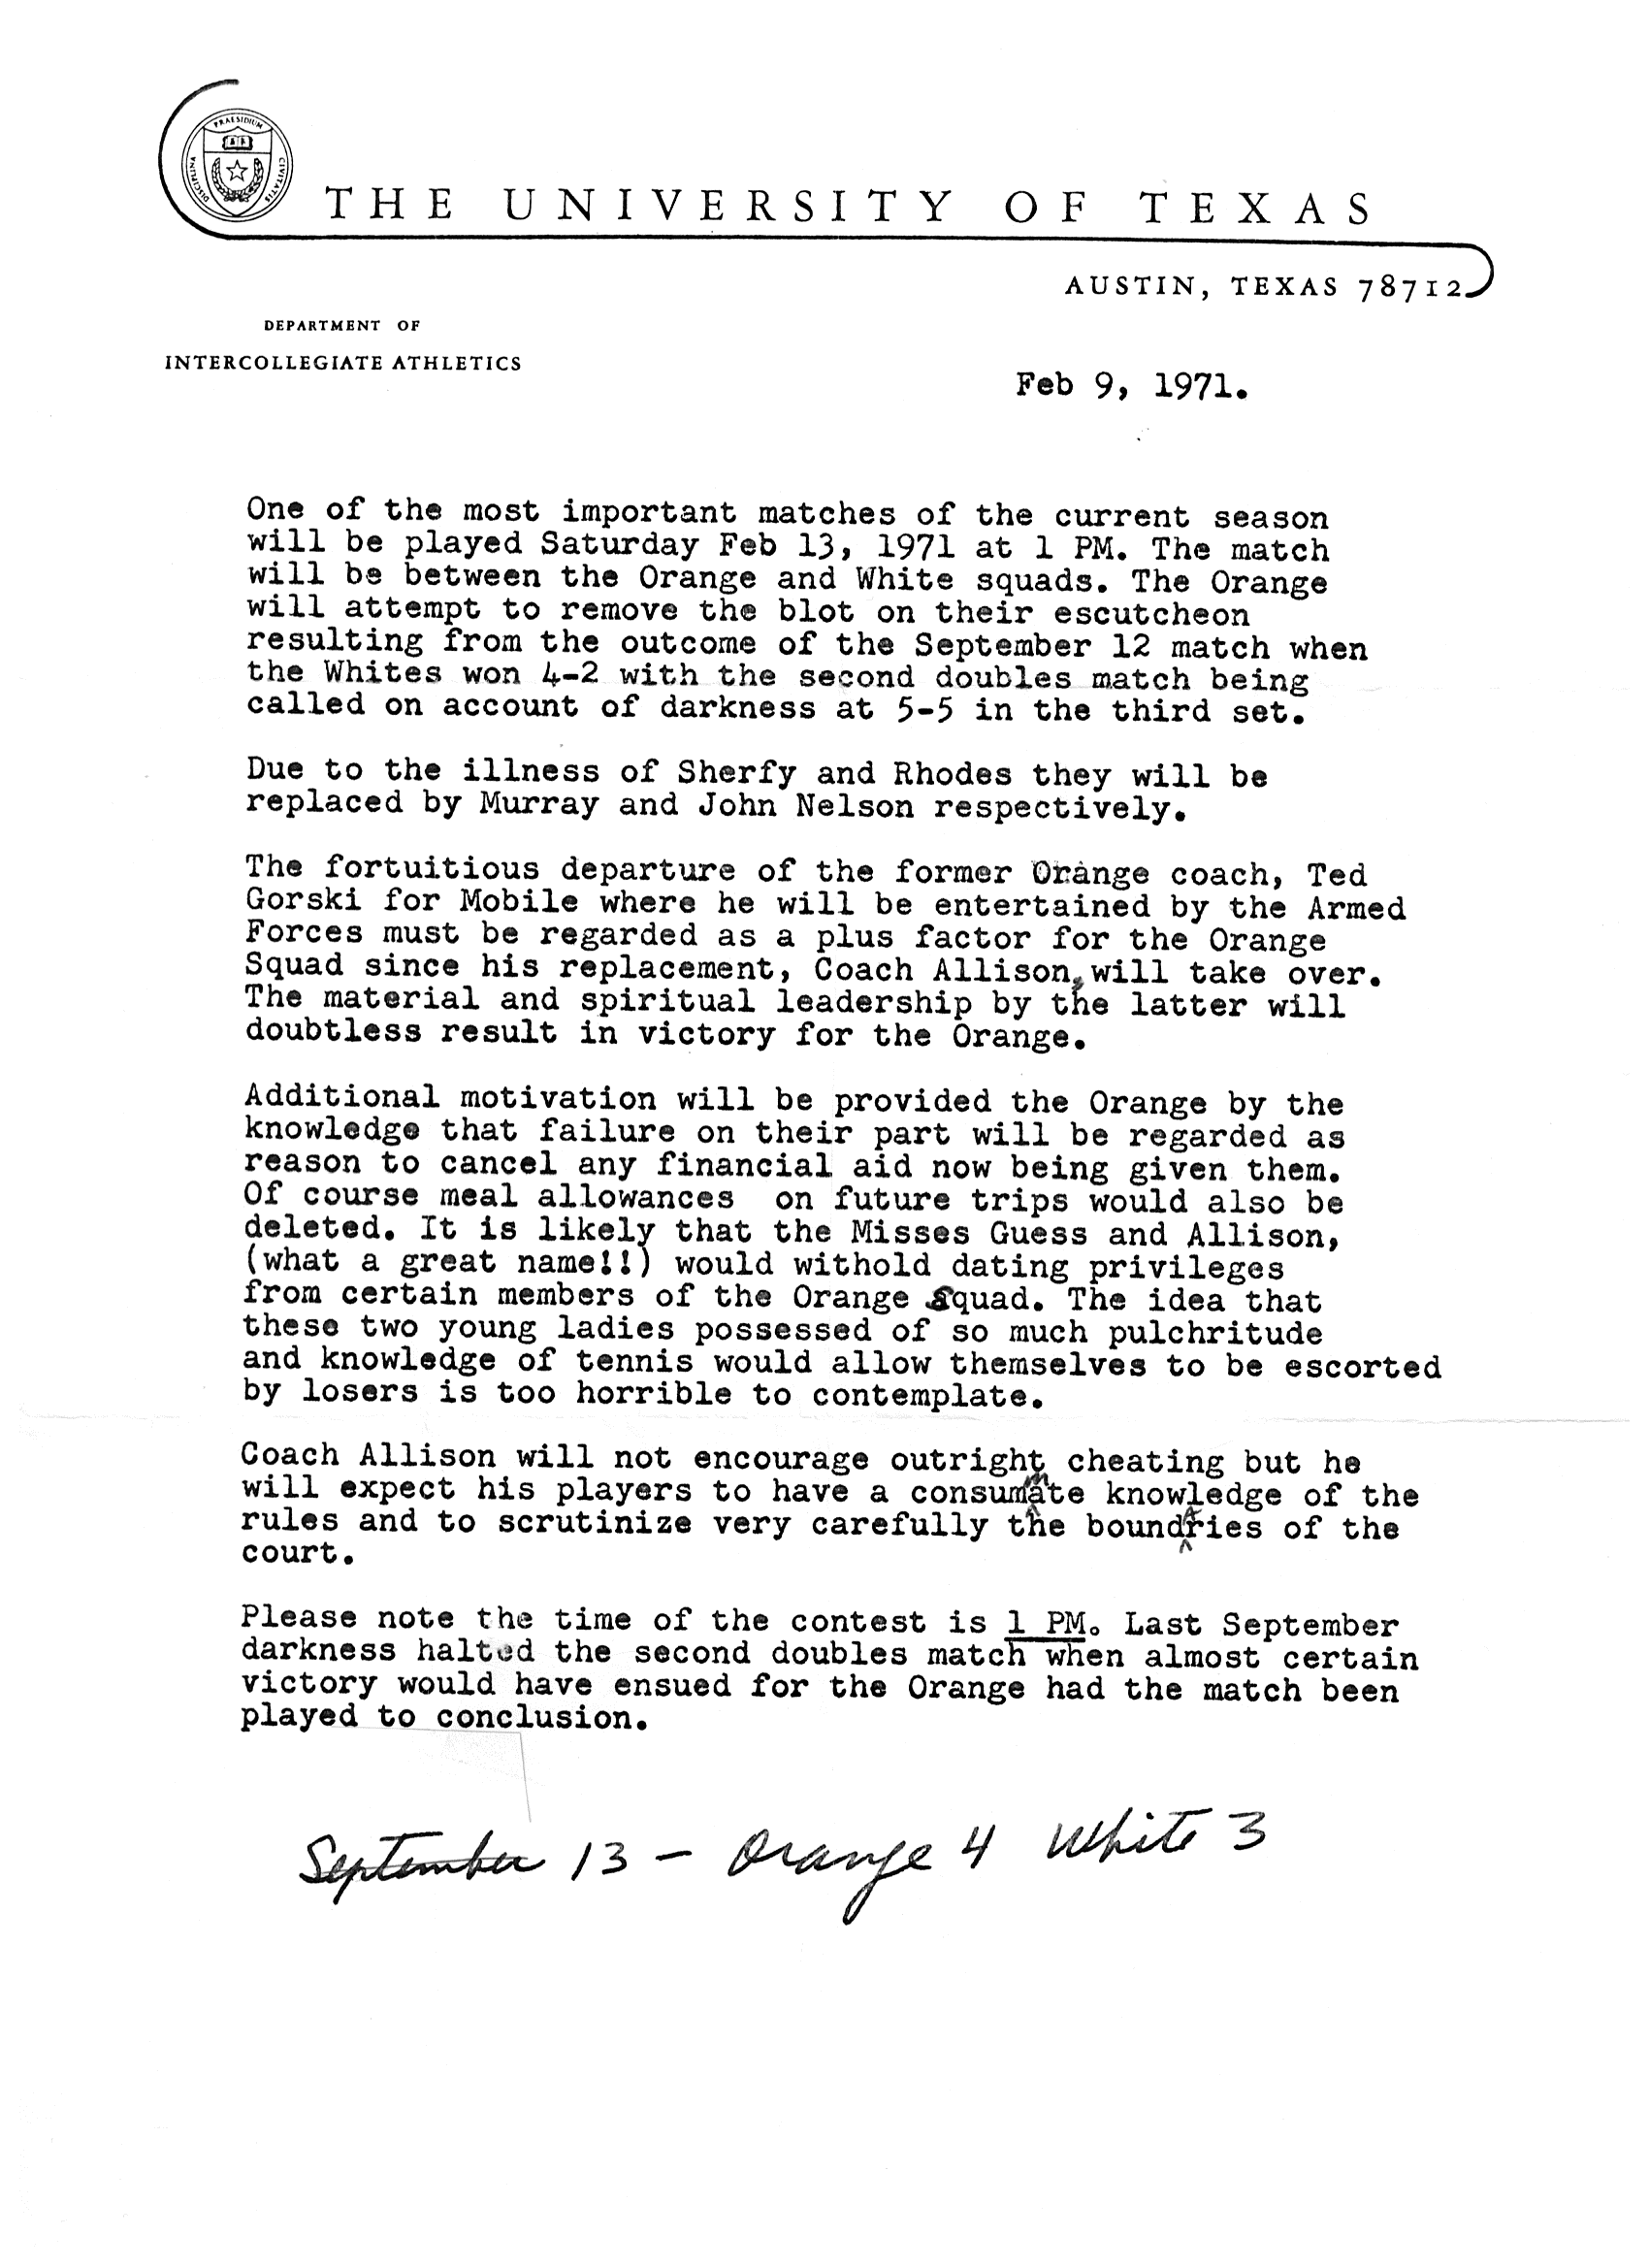 1971 letter form Wilmer Allison.png